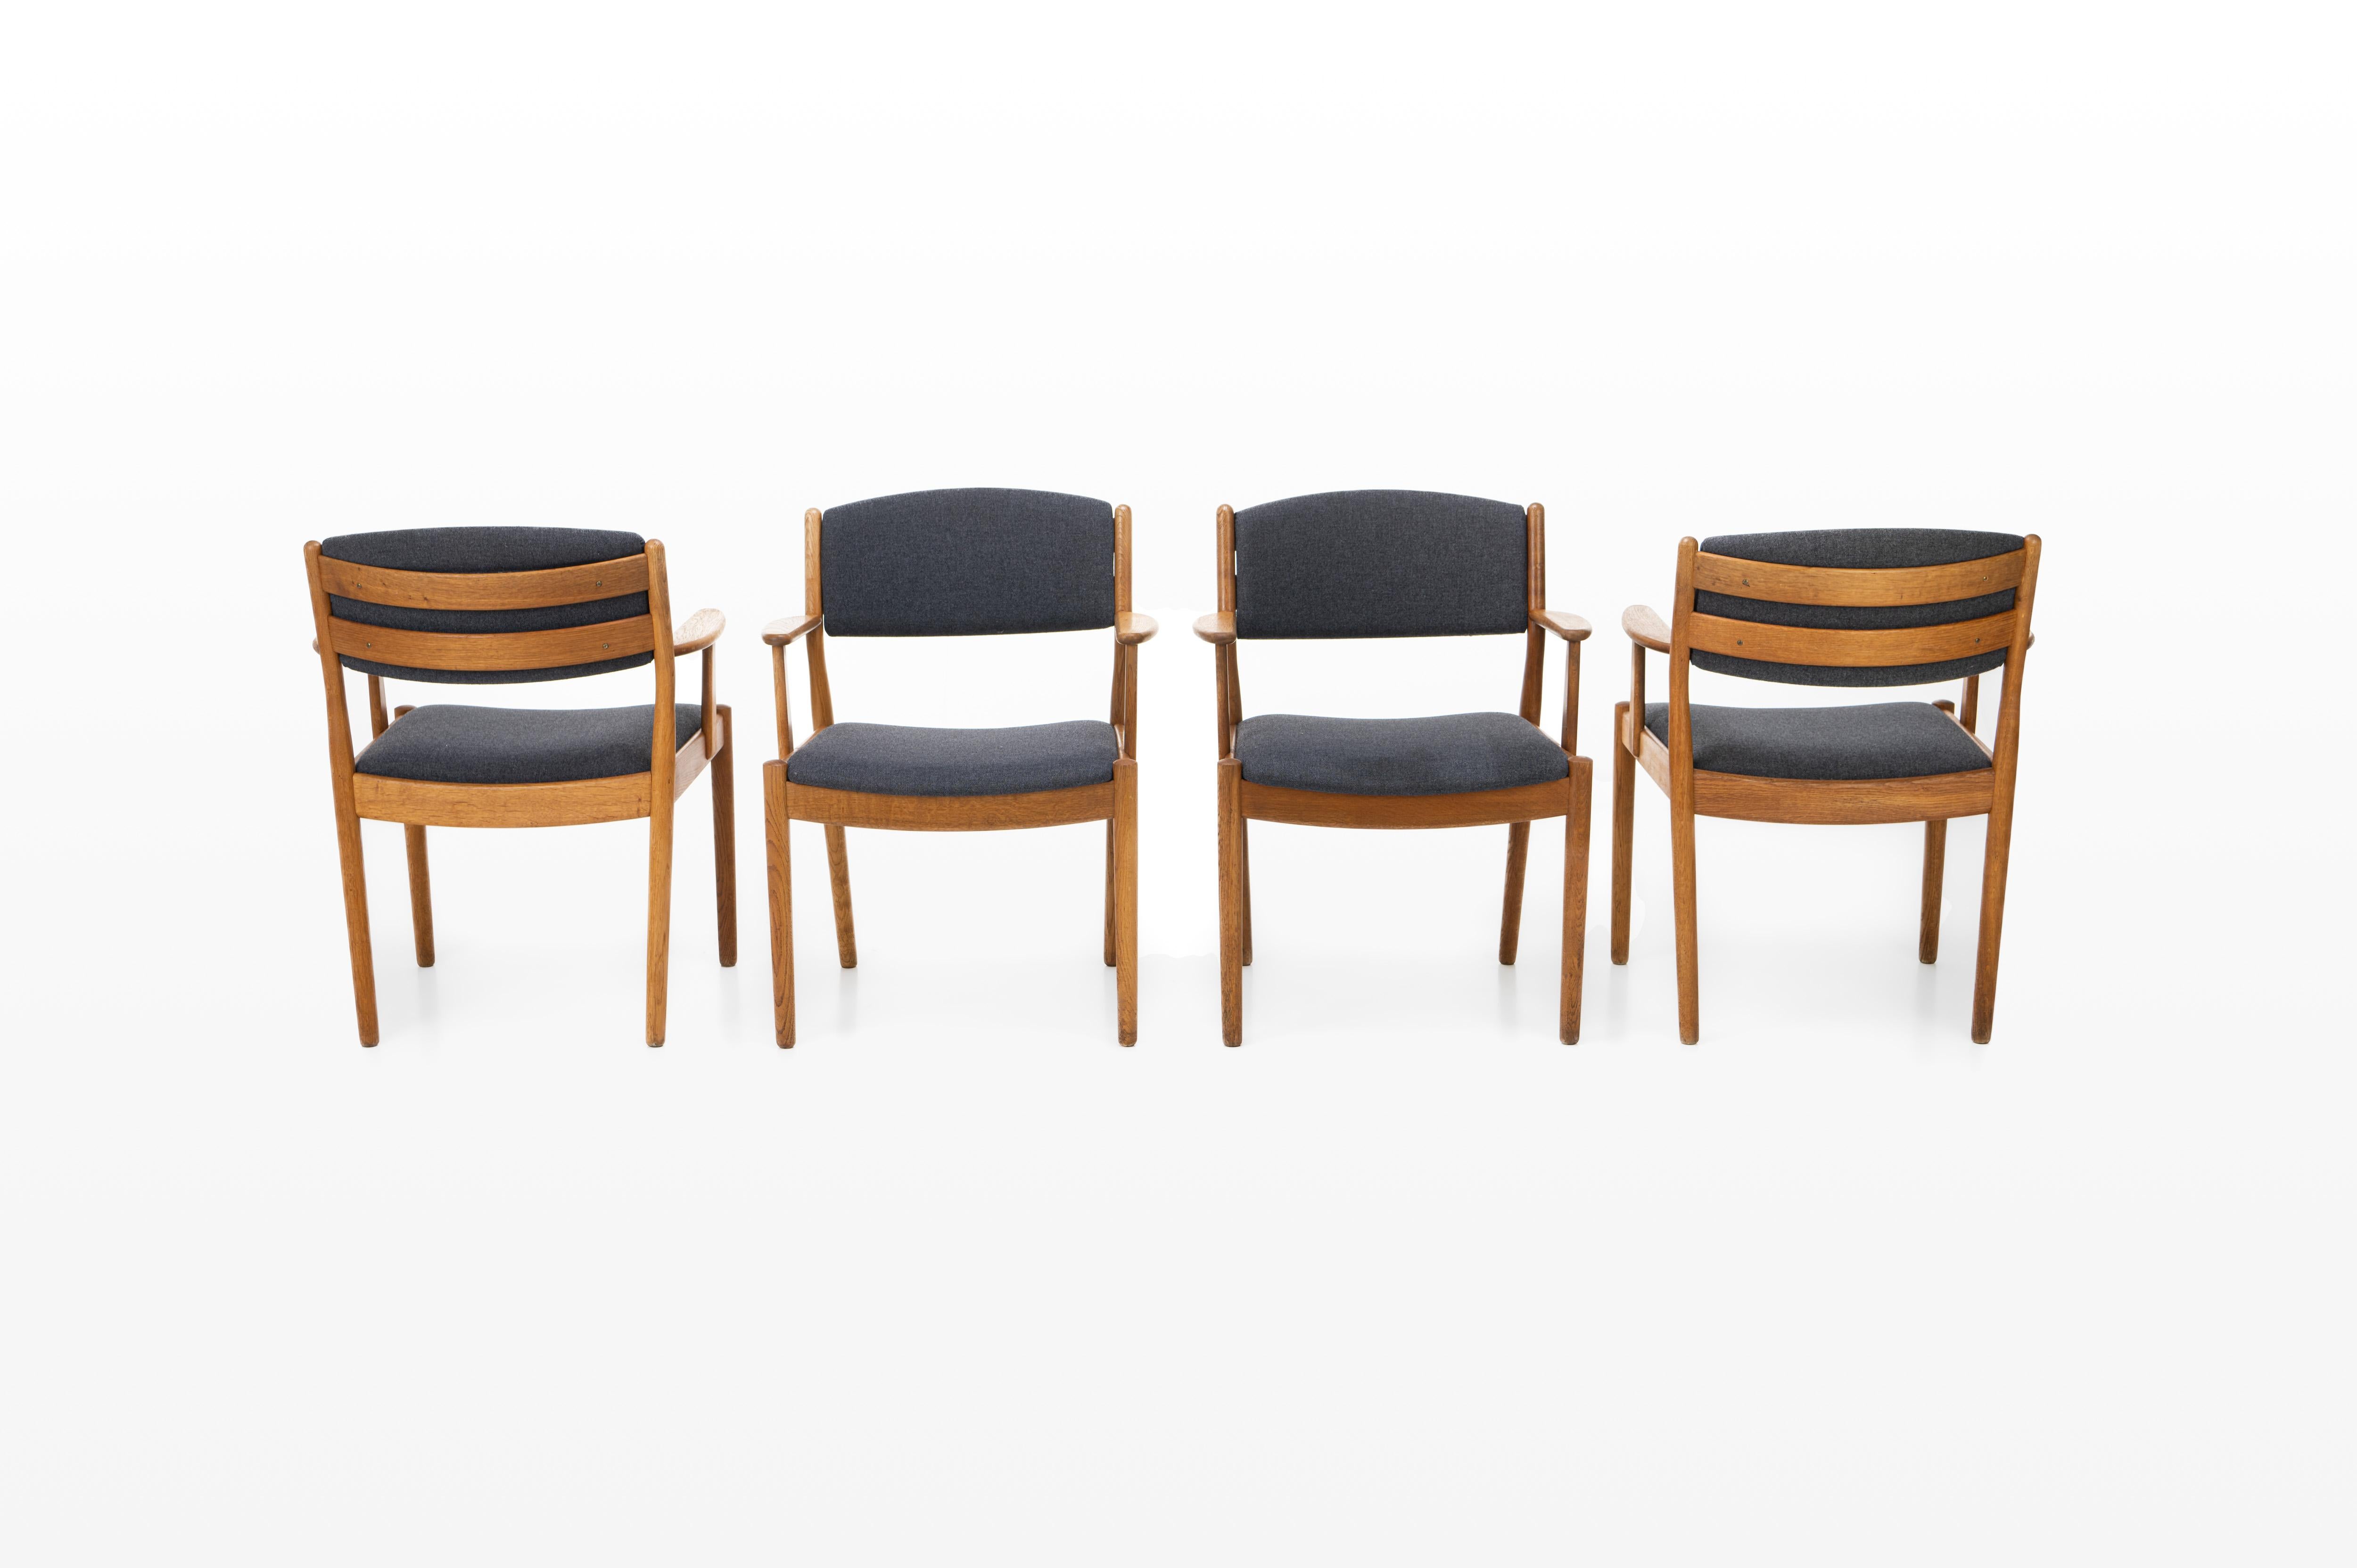 Très bel ensemble de quatre chaises de salle à manger vintage avec accoudoirs, conçues par Poul Volther pour FDB Møbler, Danemark, années 1960. Les chaises ont un cadre en chêne et un tissu gris foncé.
